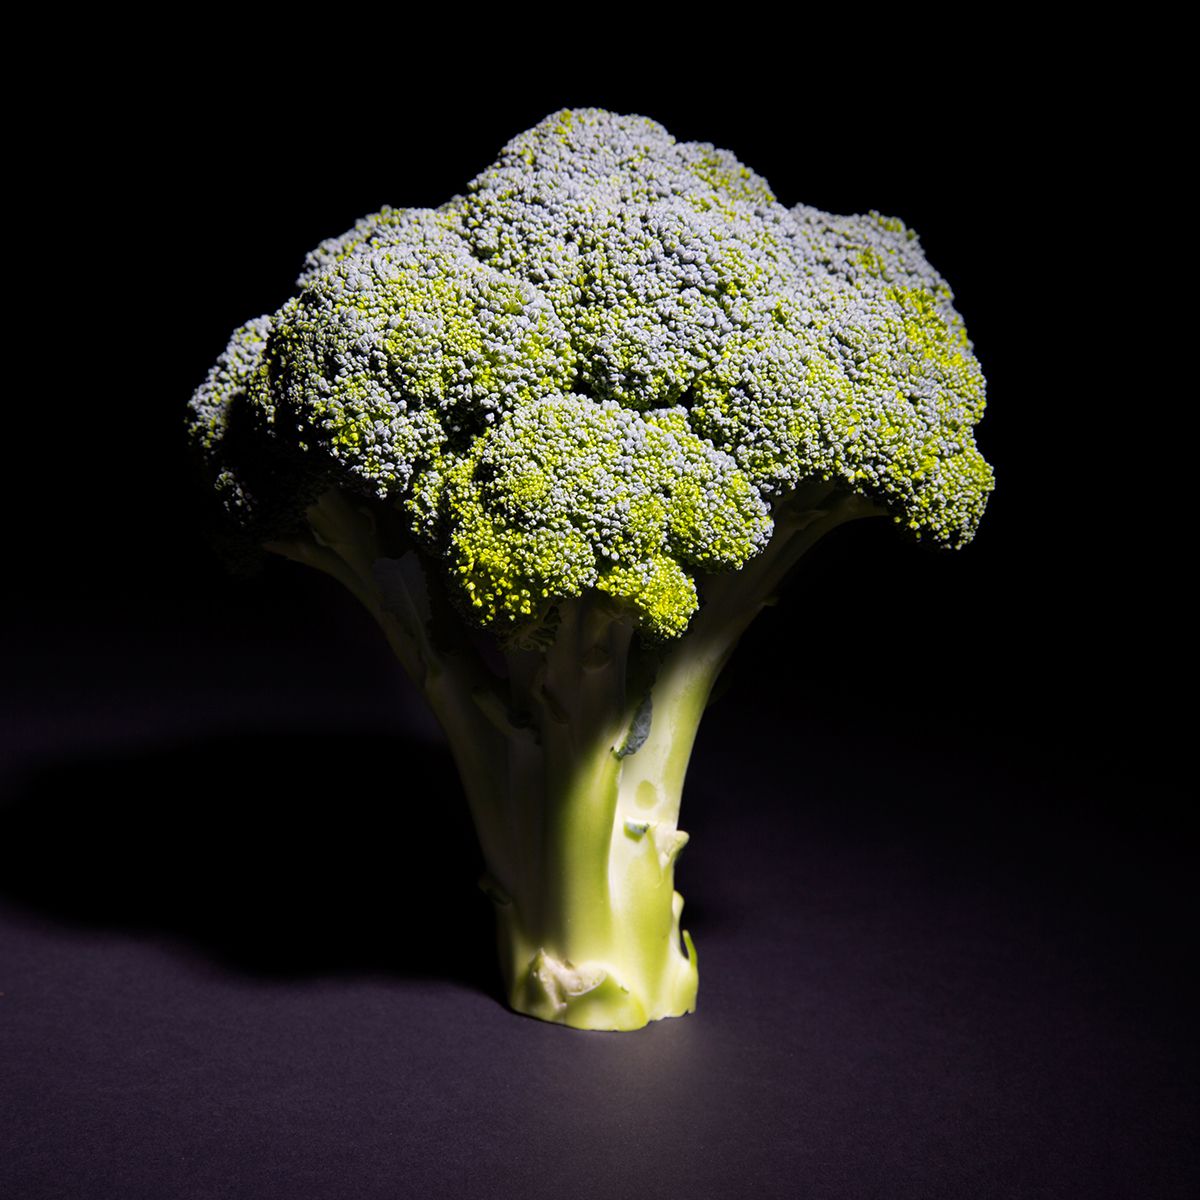 BoxNCase Organic Broccoli